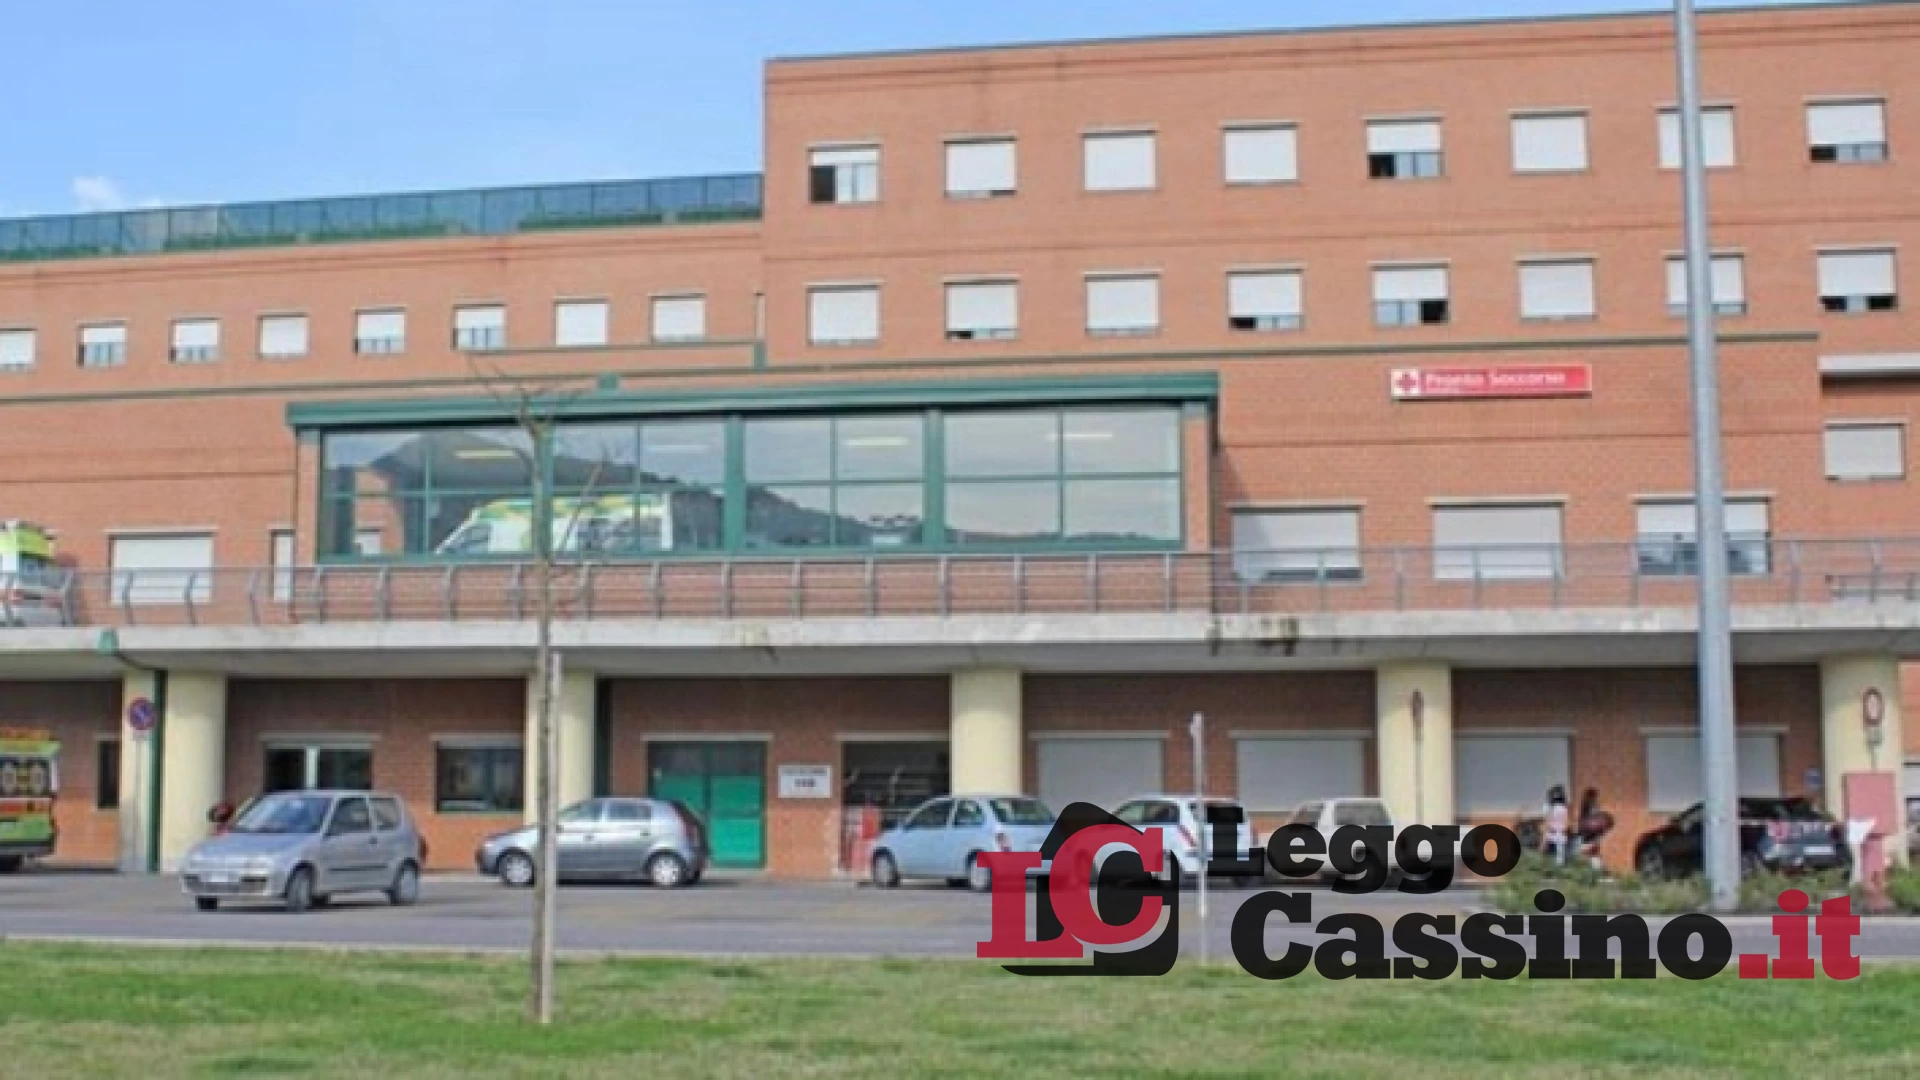 Violente lite nella notte, ferito Patrizio D'Aliesio: corsa in ospedale